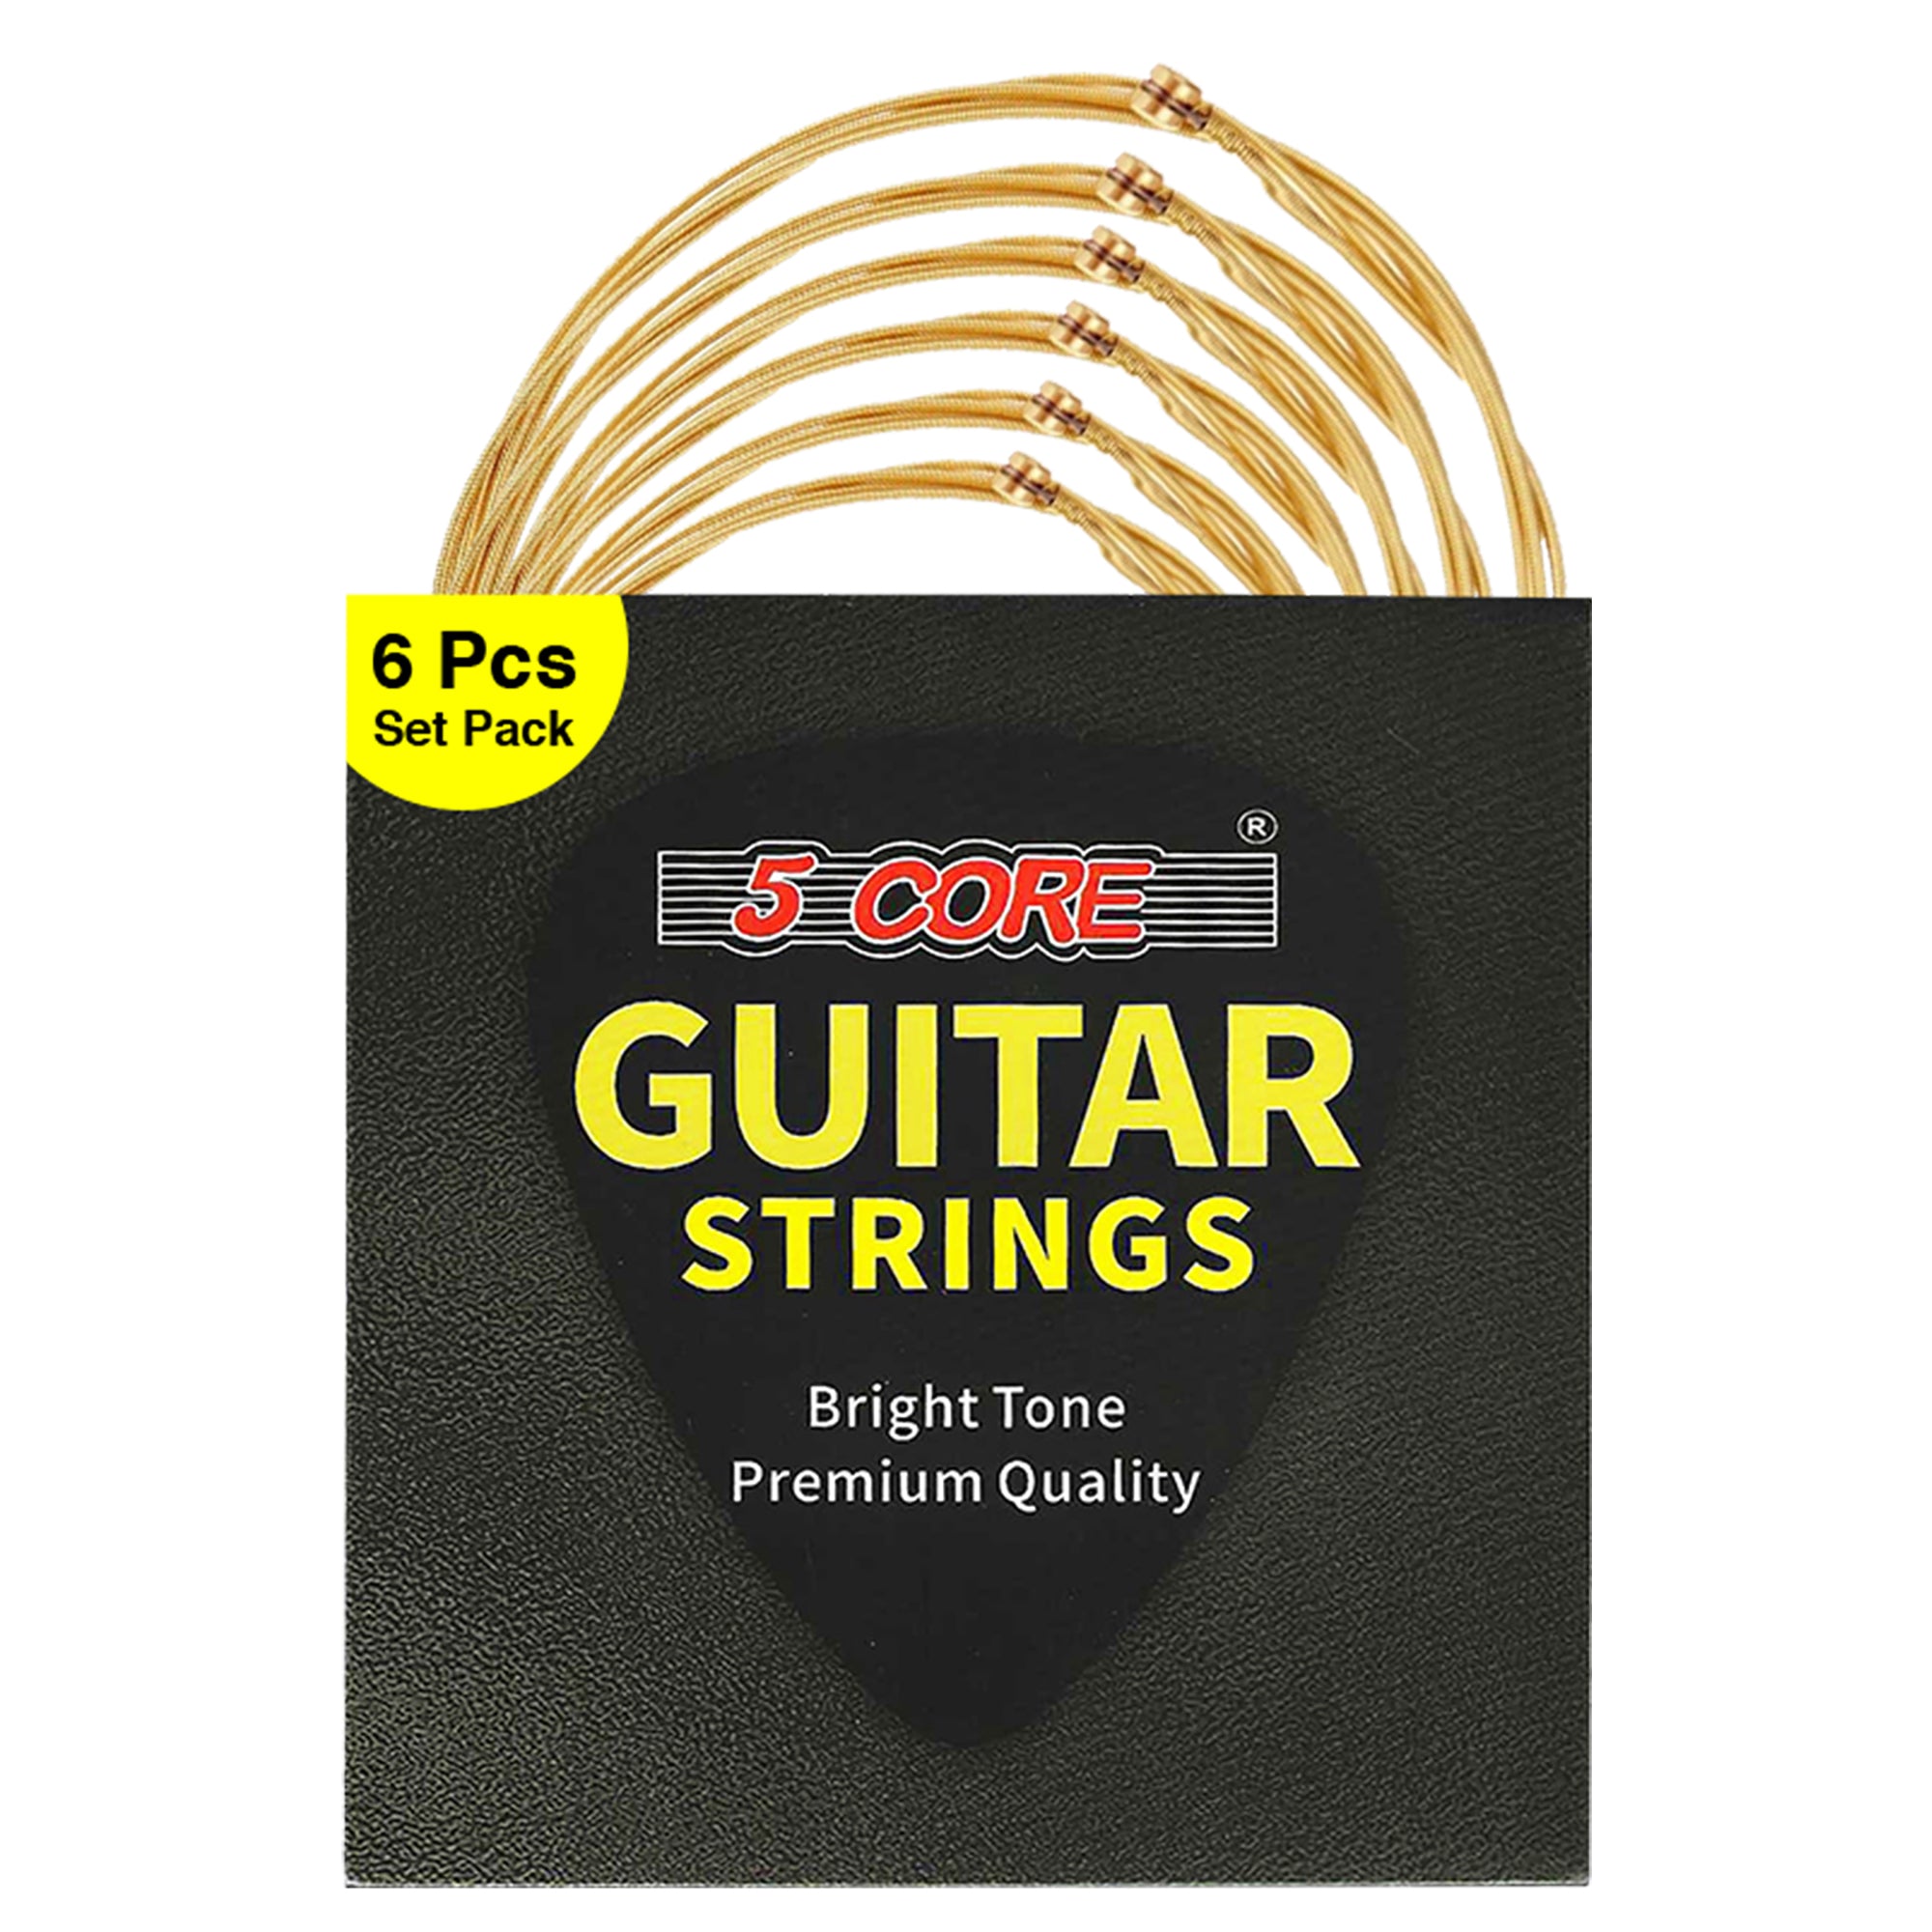 5 Core Guitar Strings 6 Pieces in 1 Set Phosphor Bronze Acoustic Guitar String Round Wound Guitar String Gauge is .010-.048 - GS AC BZ